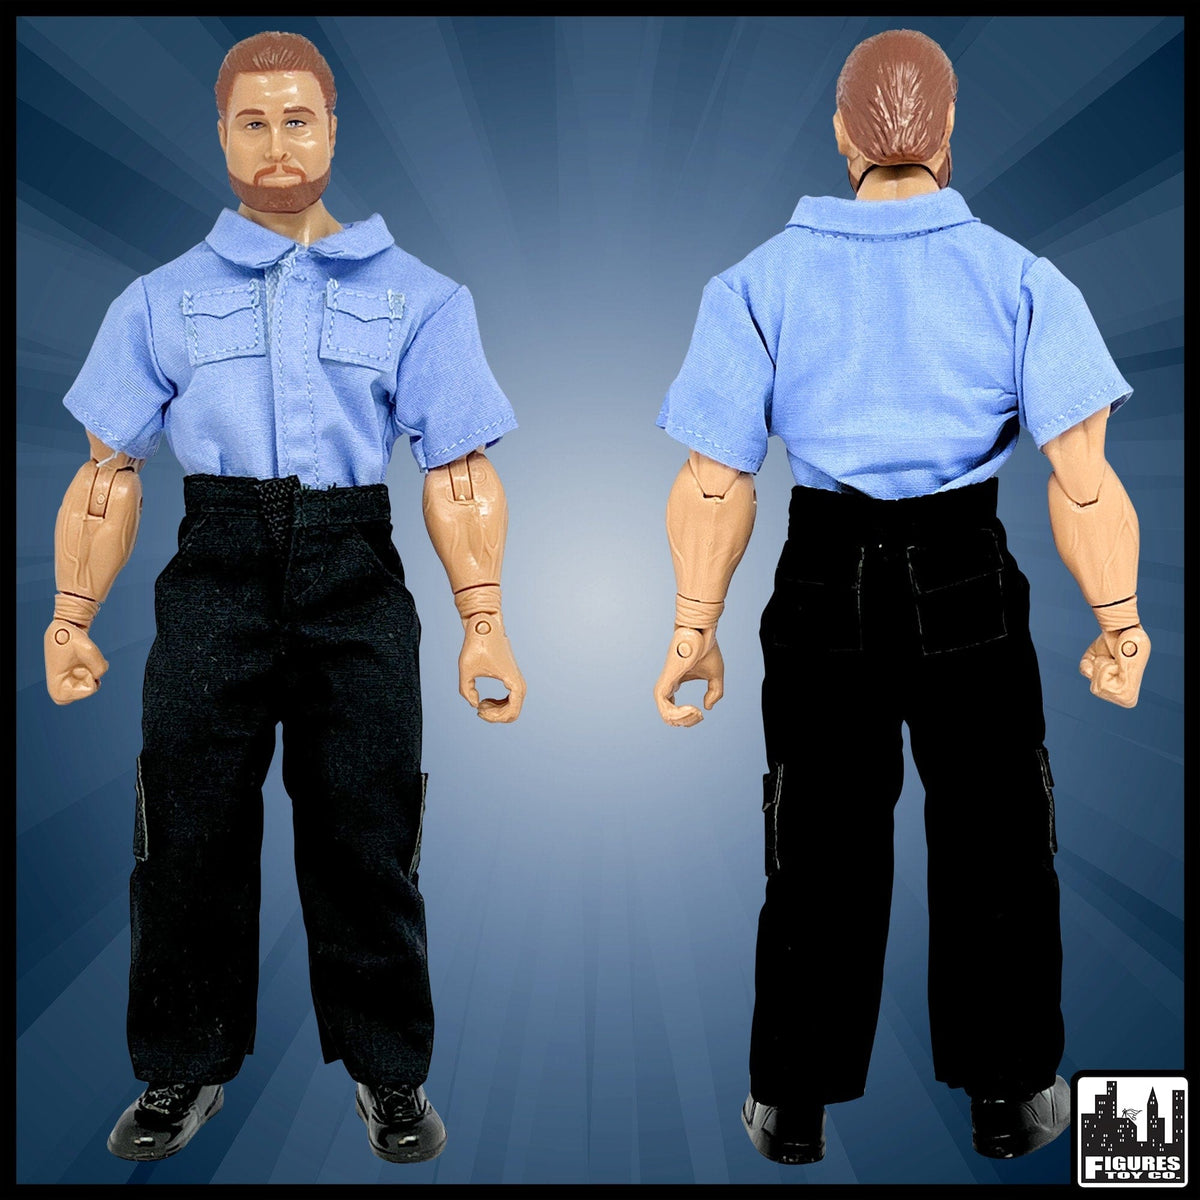 EMT Ambulance Driver for WWE Wrestling Action Figures